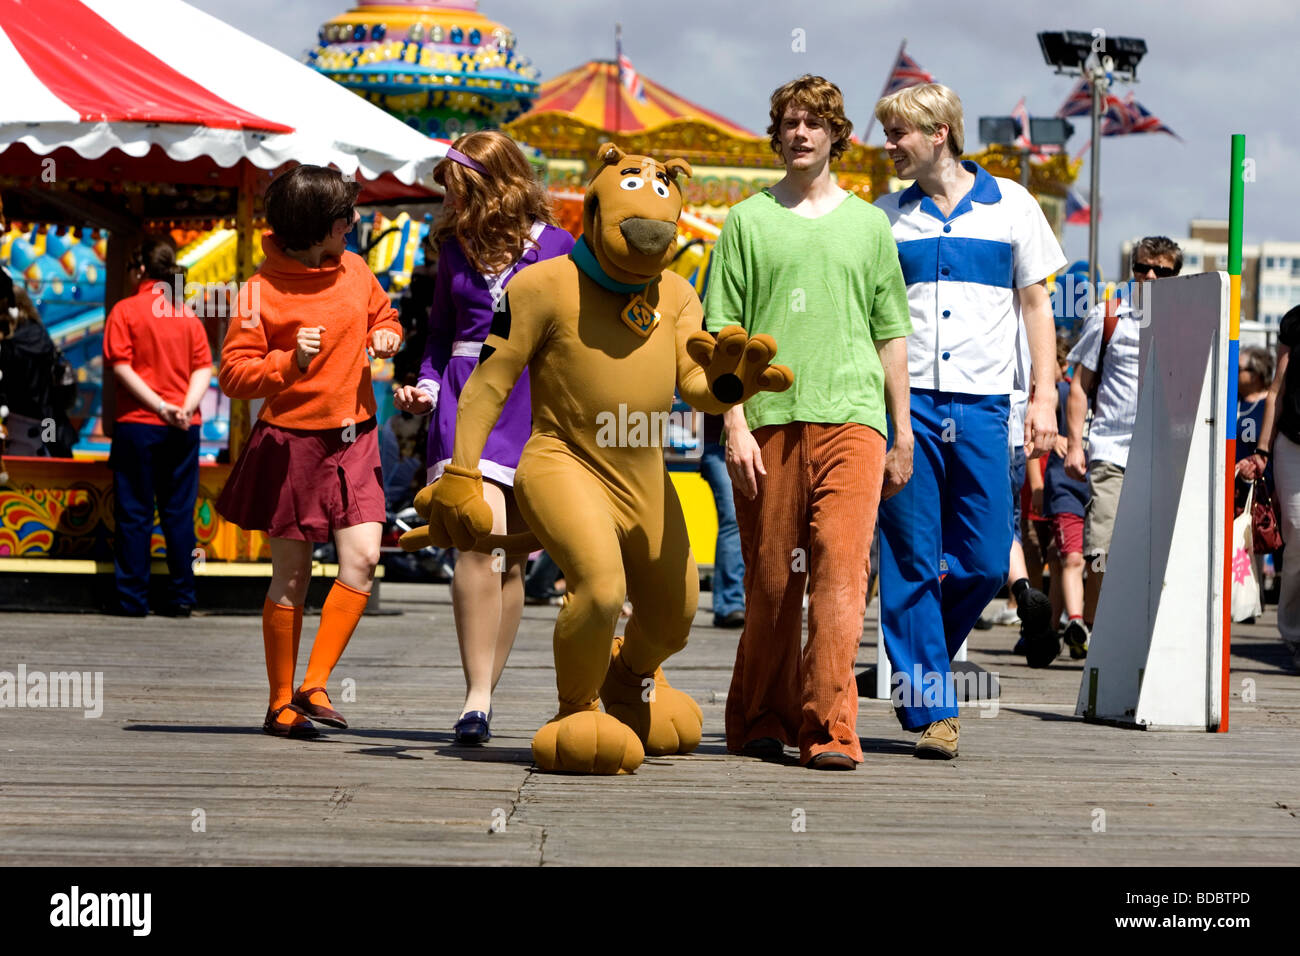 Akteure aus der Theaterproduktion von Scooby Doo - Scooby Doo und die Pirate Ghost auf Brightons Palace Pier, Sussex abgebildet. Stockfoto